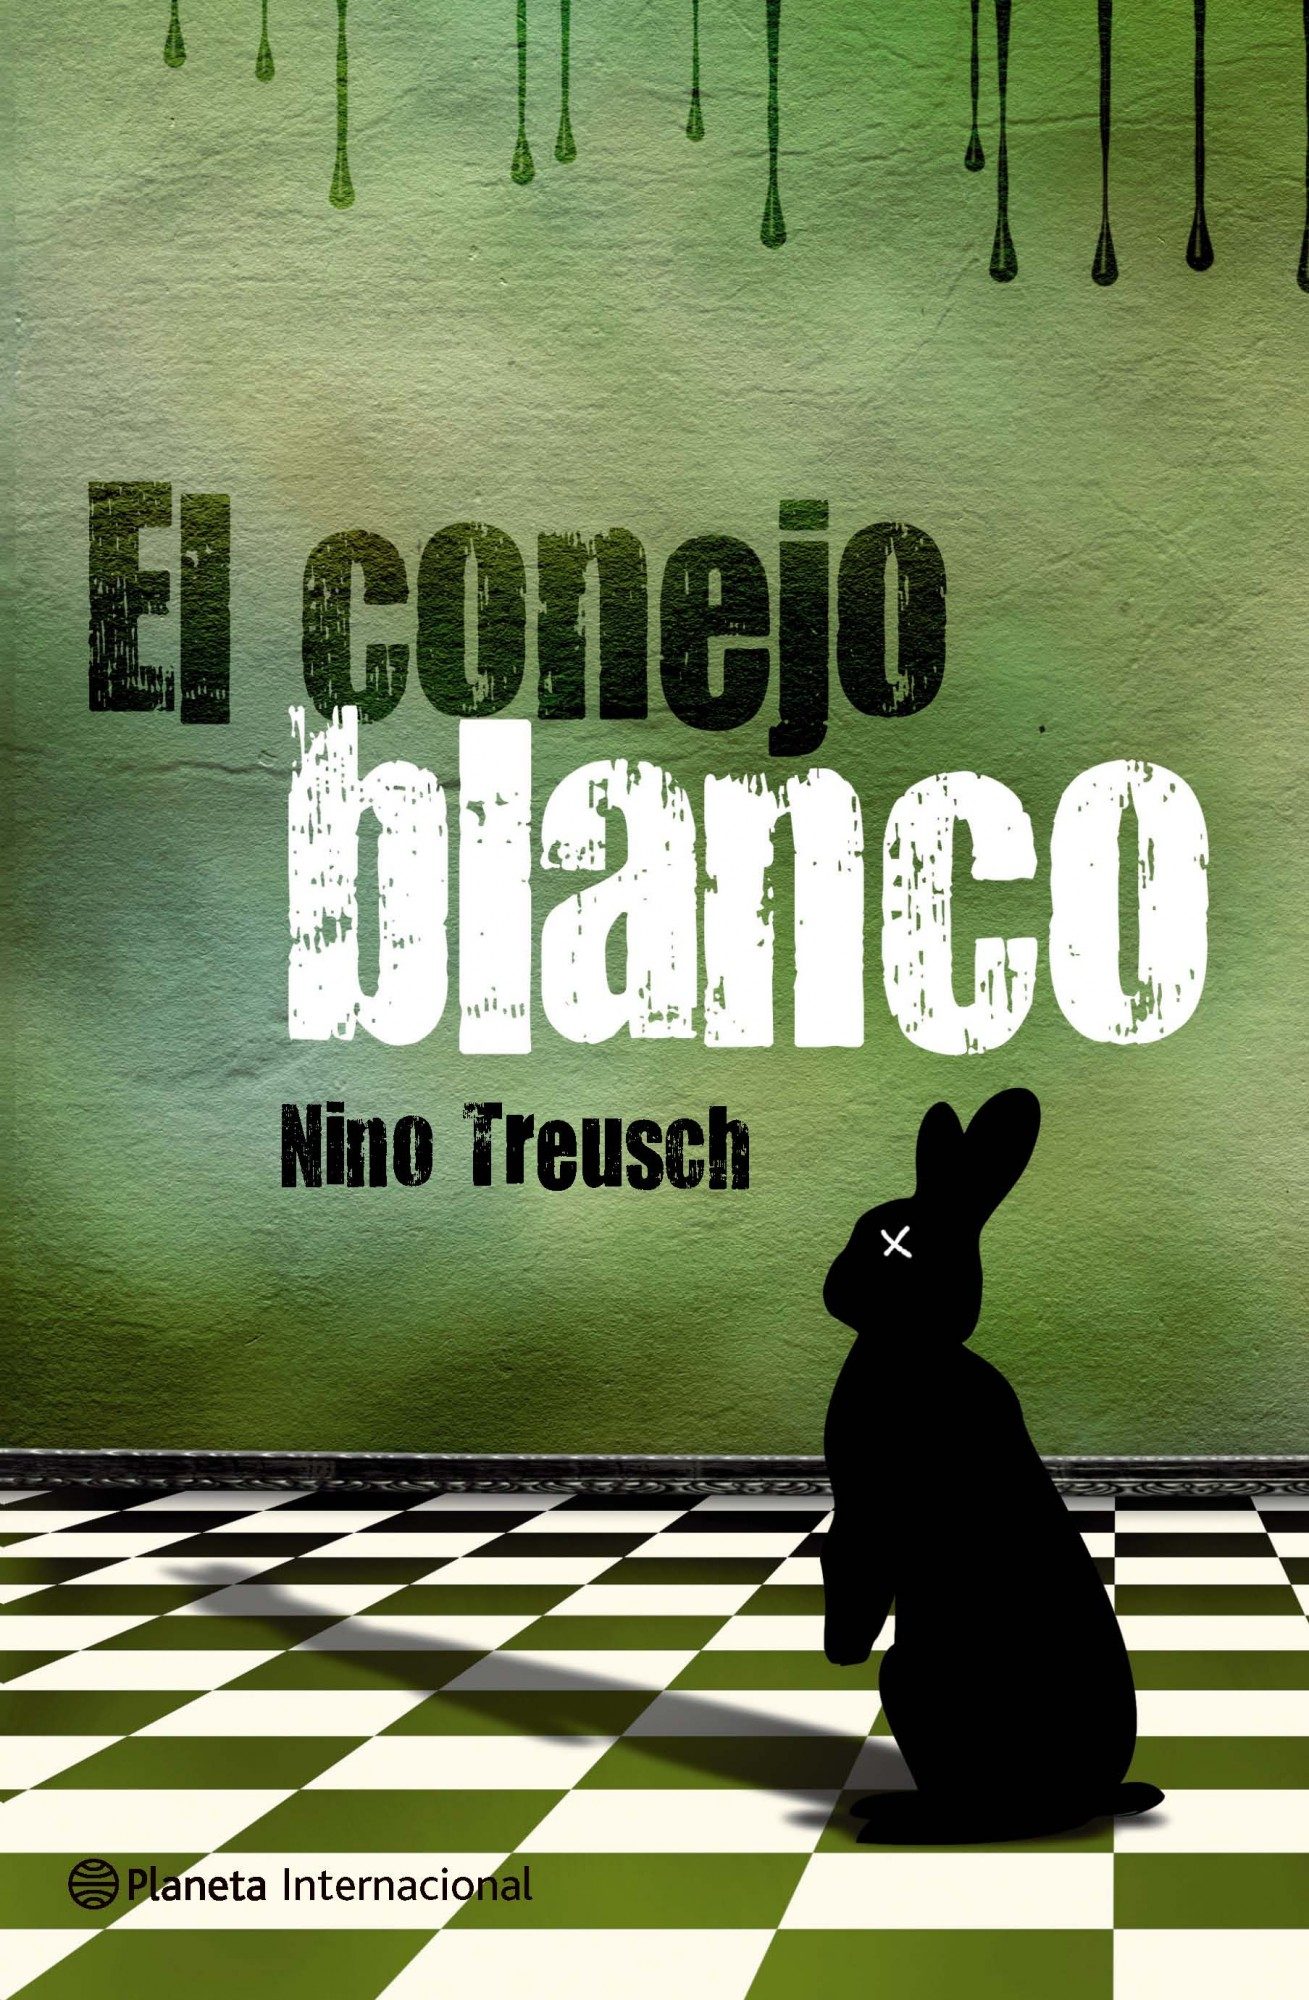 Нино перевод. El conejo Blanco здание Хавьер сеоанин. Freusch. Книга Бланко Сарате.